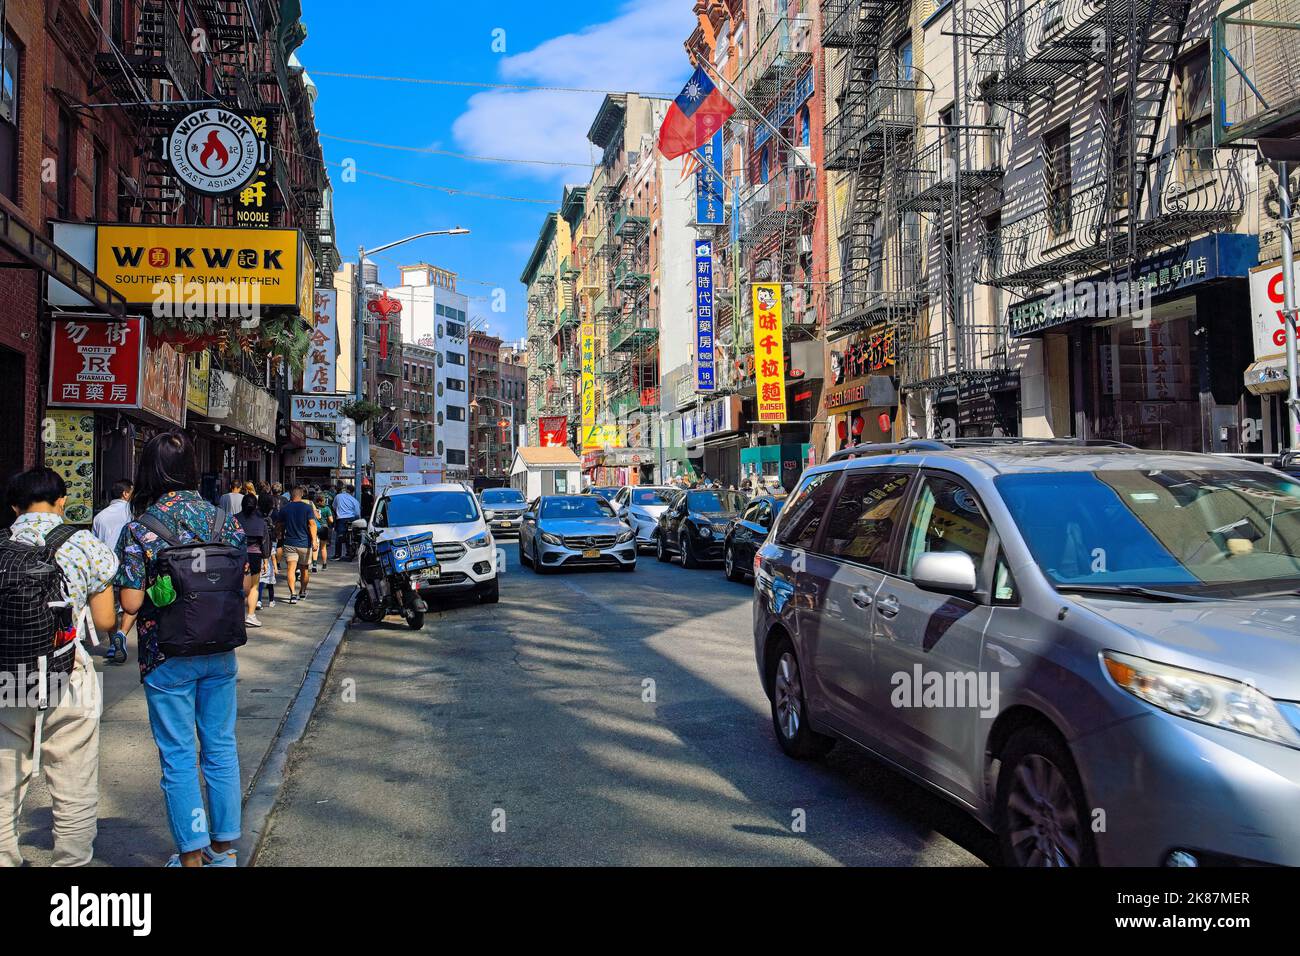 New York, NY, USA - 21. Okt 2022: Ein Blick entlang der Chinatown Mott Street mit einer großen Anzahl von Restaurants, Souvenirläden und anderen kommerziellen Aktivitäten Stockfoto